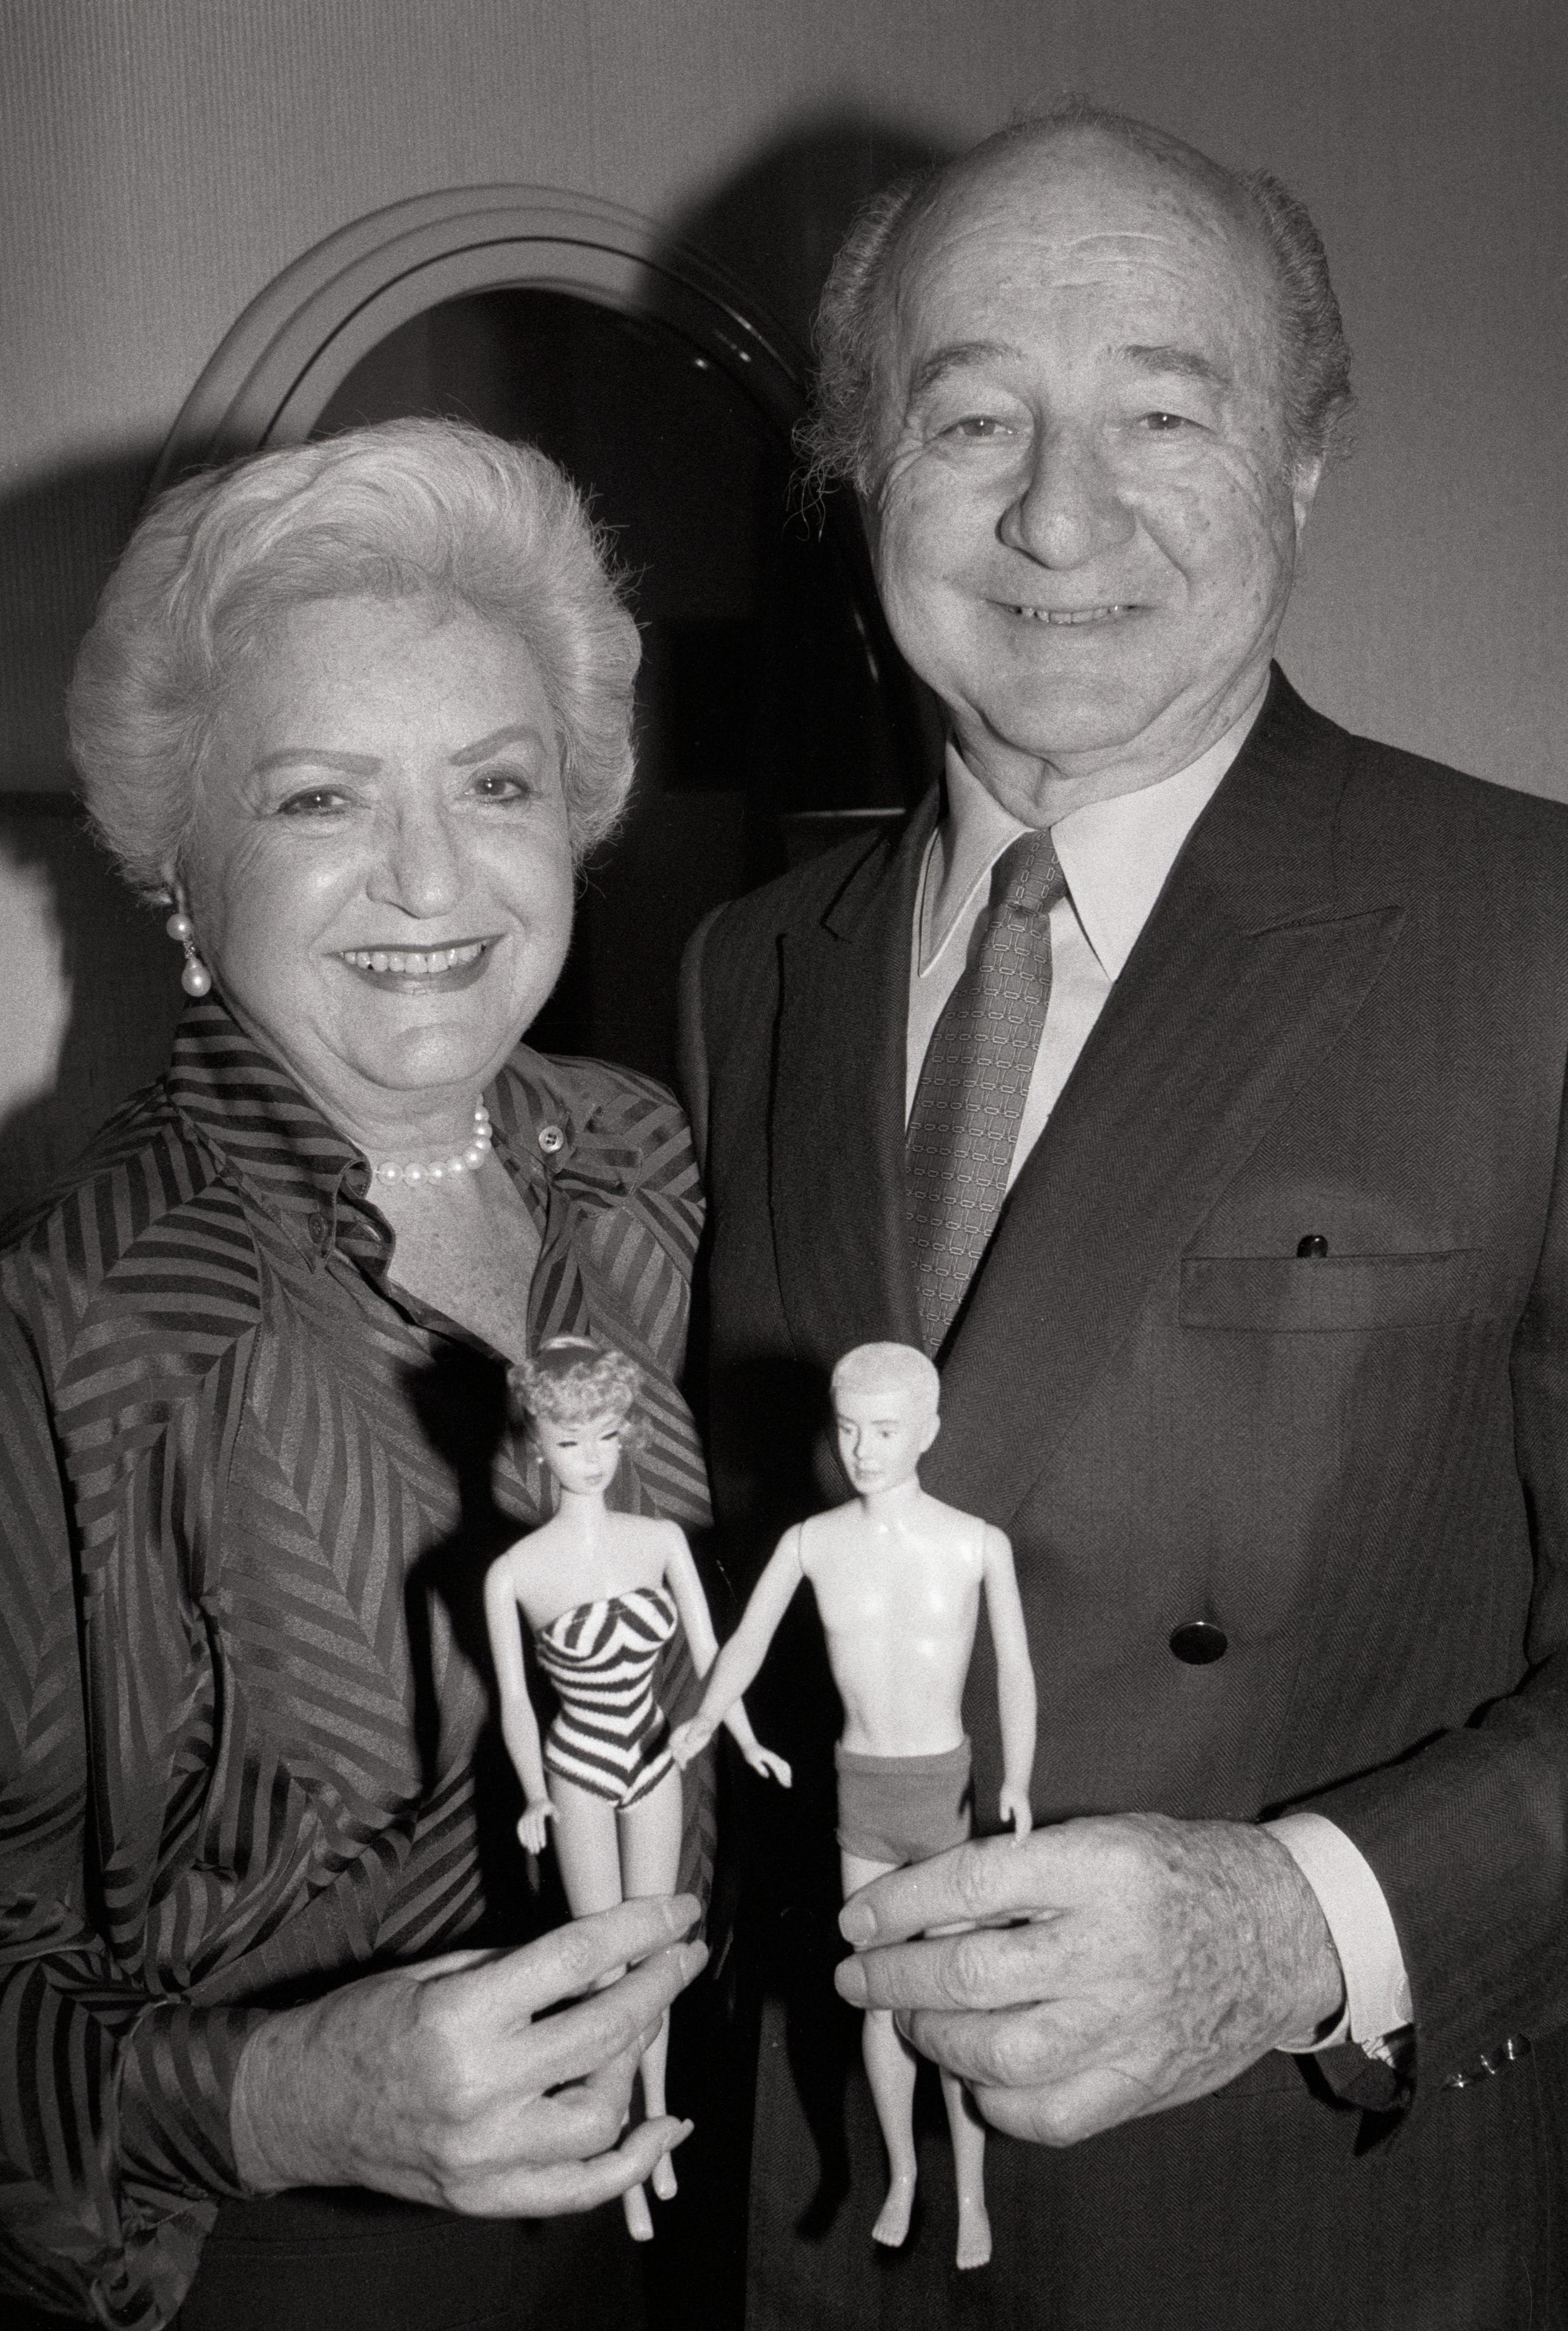 Ein Porträt von Ruth und Elliott Handler, dem Paar, das 1959 die Barbie-Puppe vorstellte, mit einer Barbie- und Ken-Puppe in der Hand.